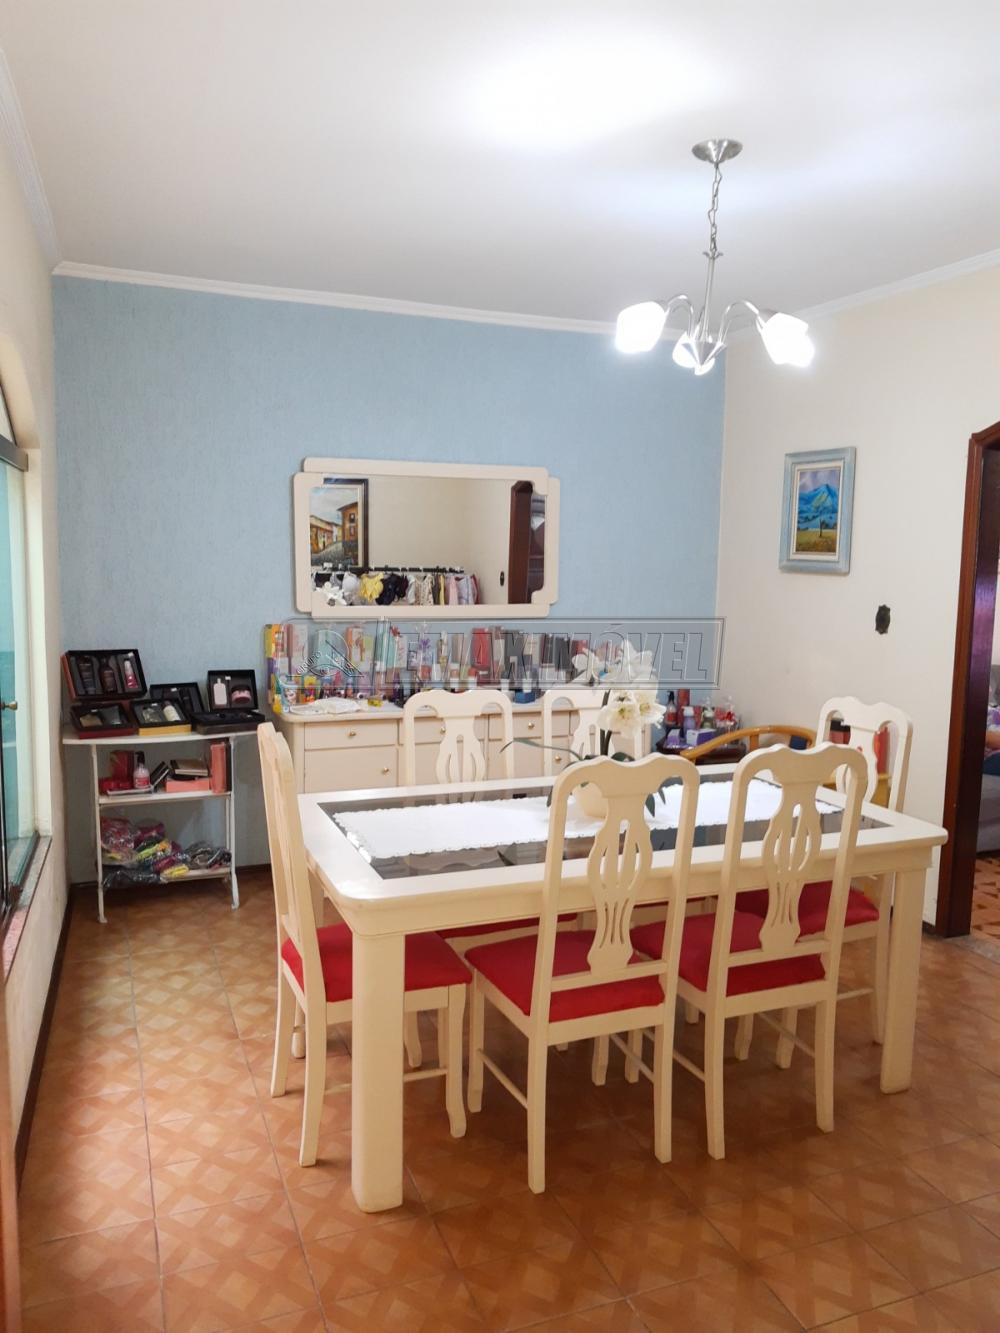 Comprar Casa / em Bairros em Sorocaba R$ 630.000,00 - Foto 9